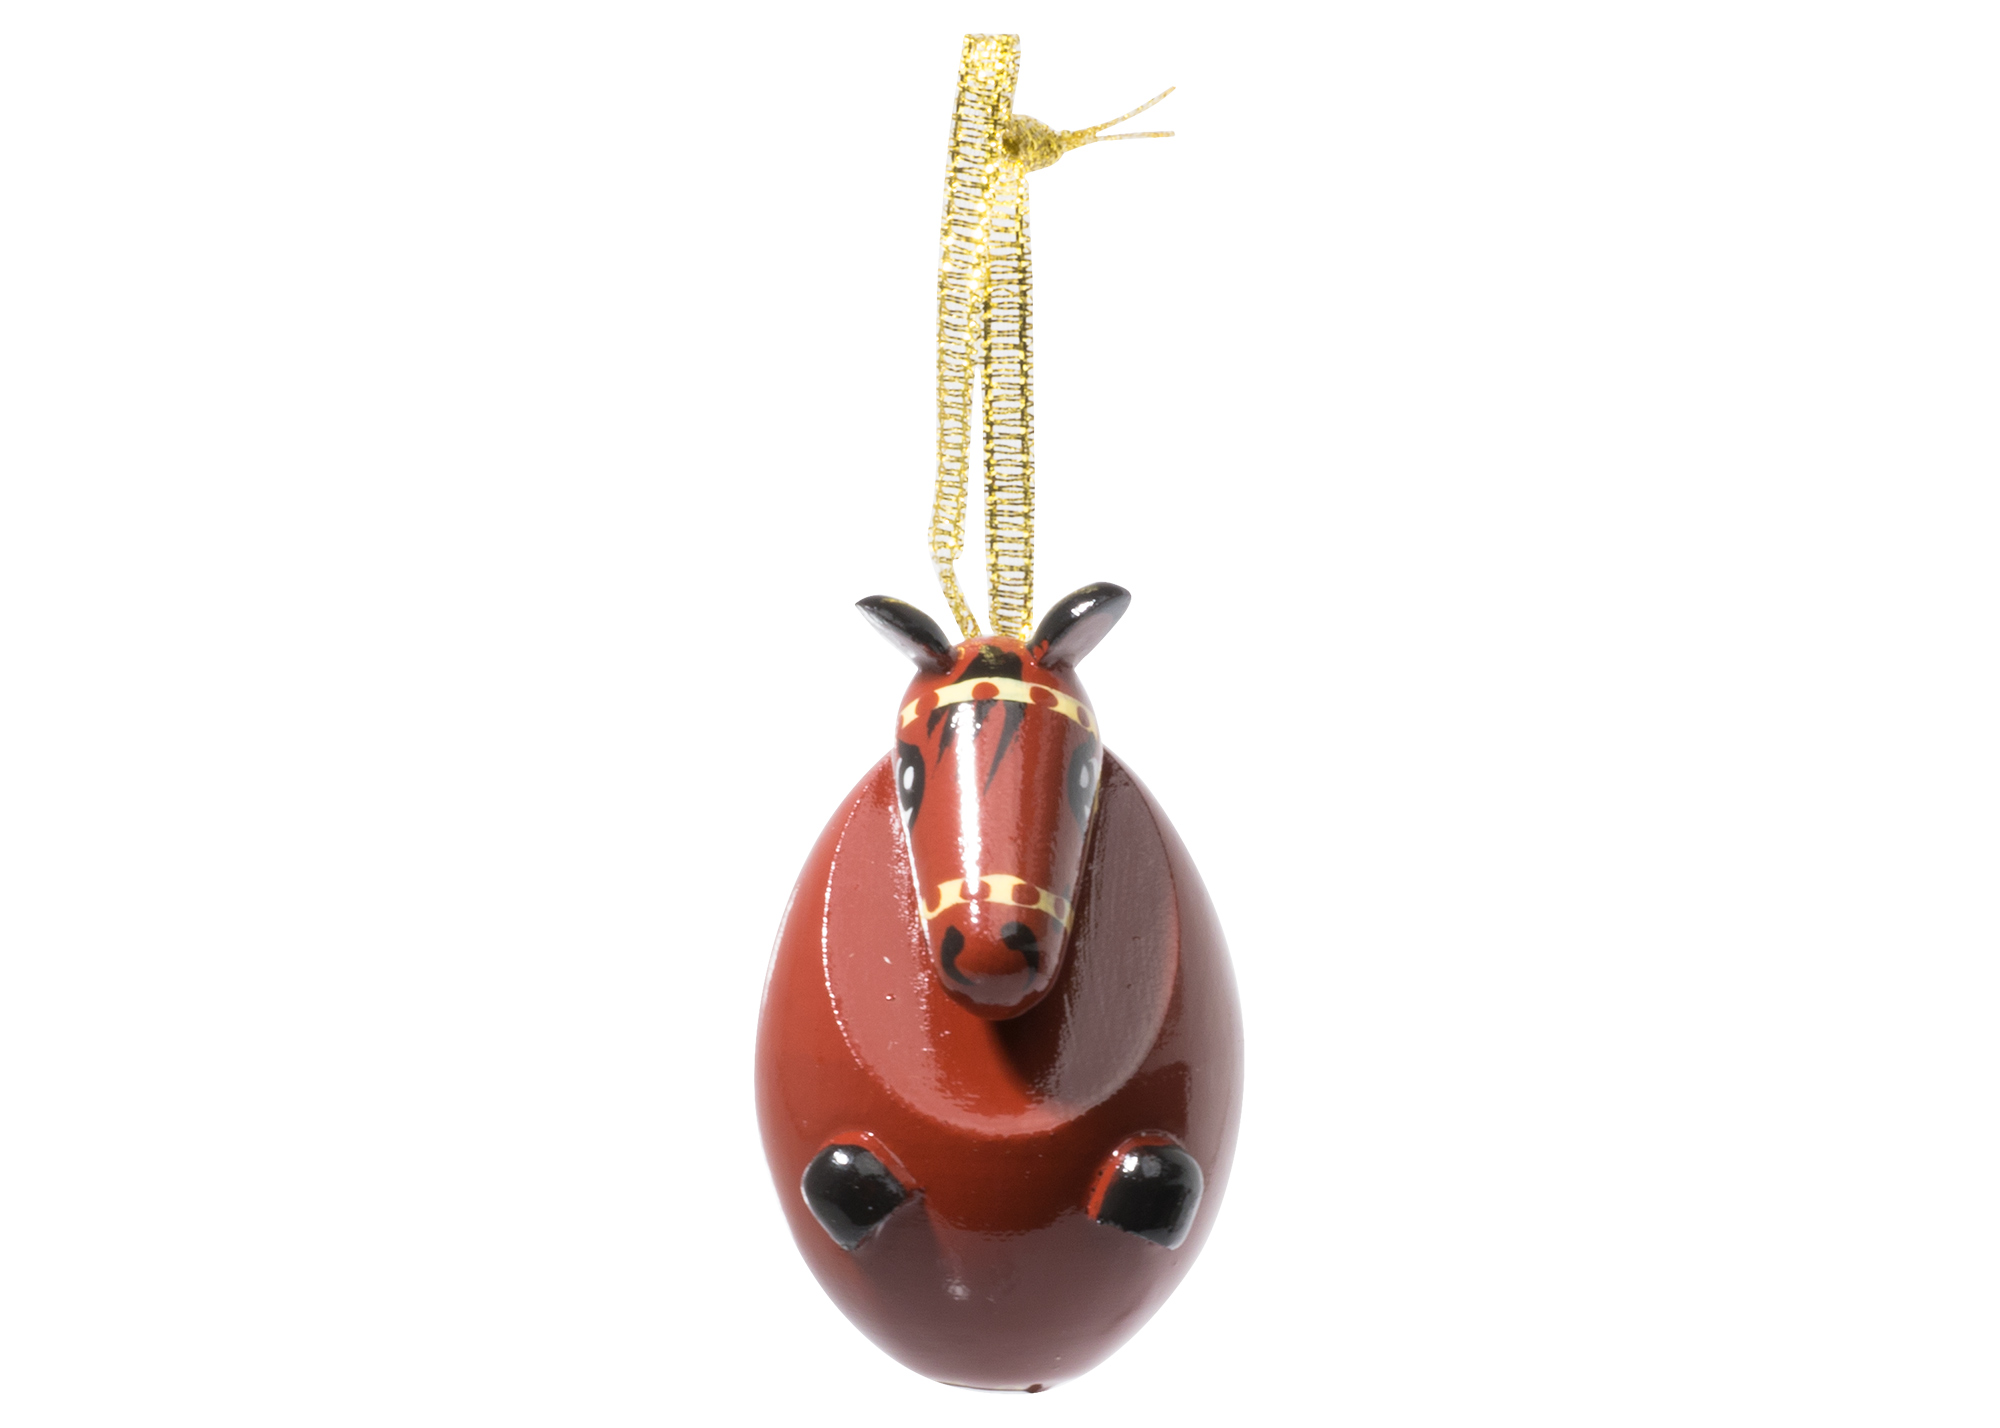 Buy Horse Ornament 2" at GoldenCockerel.com